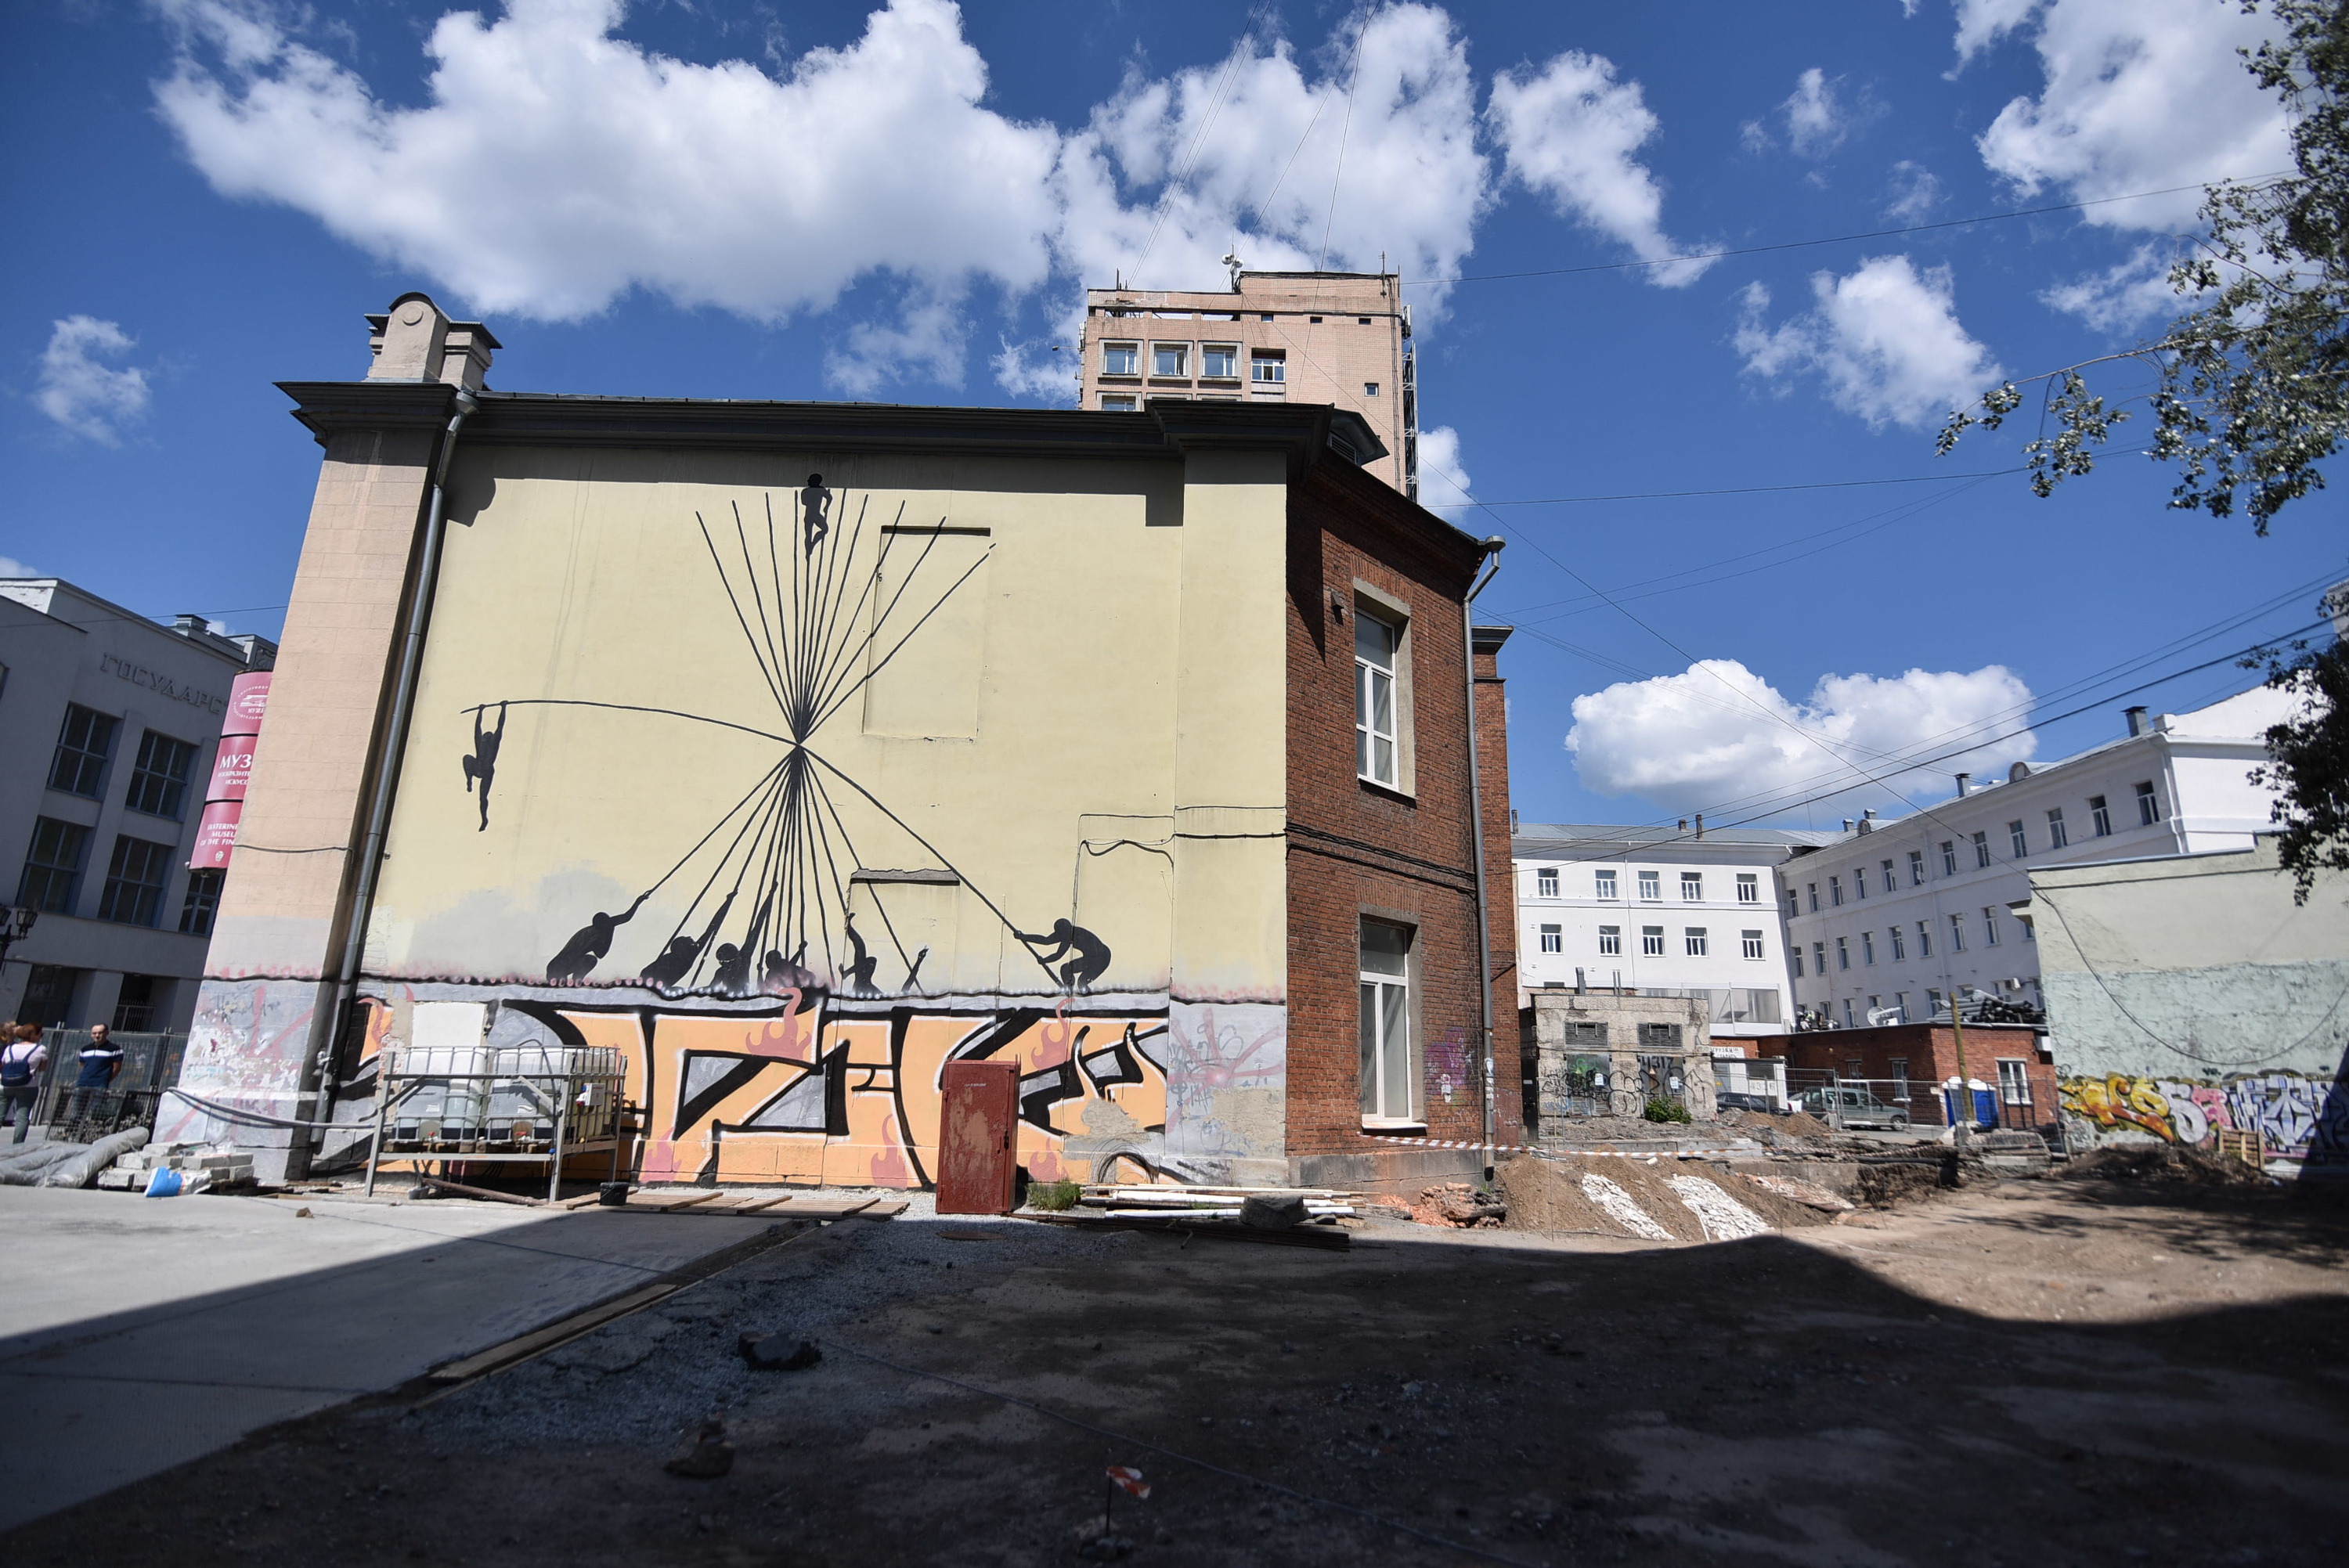 Работу фестиваля «Стенограффия» «Люди на прутиках» испанского художника SAM3 уберут с фасада здания музея. Уже сейчас она испорчена нелегальными граффити-шрифтами 